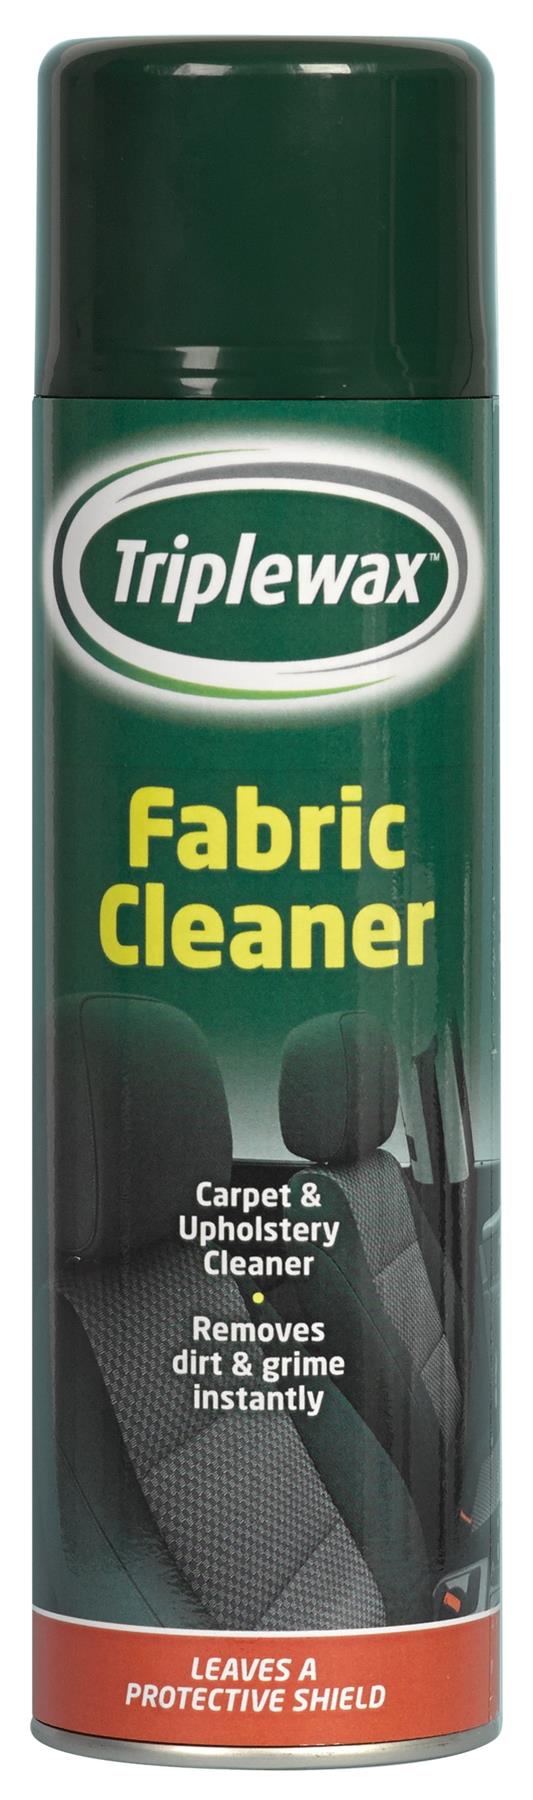 Triplewax Fabric Cleaner - 500ml